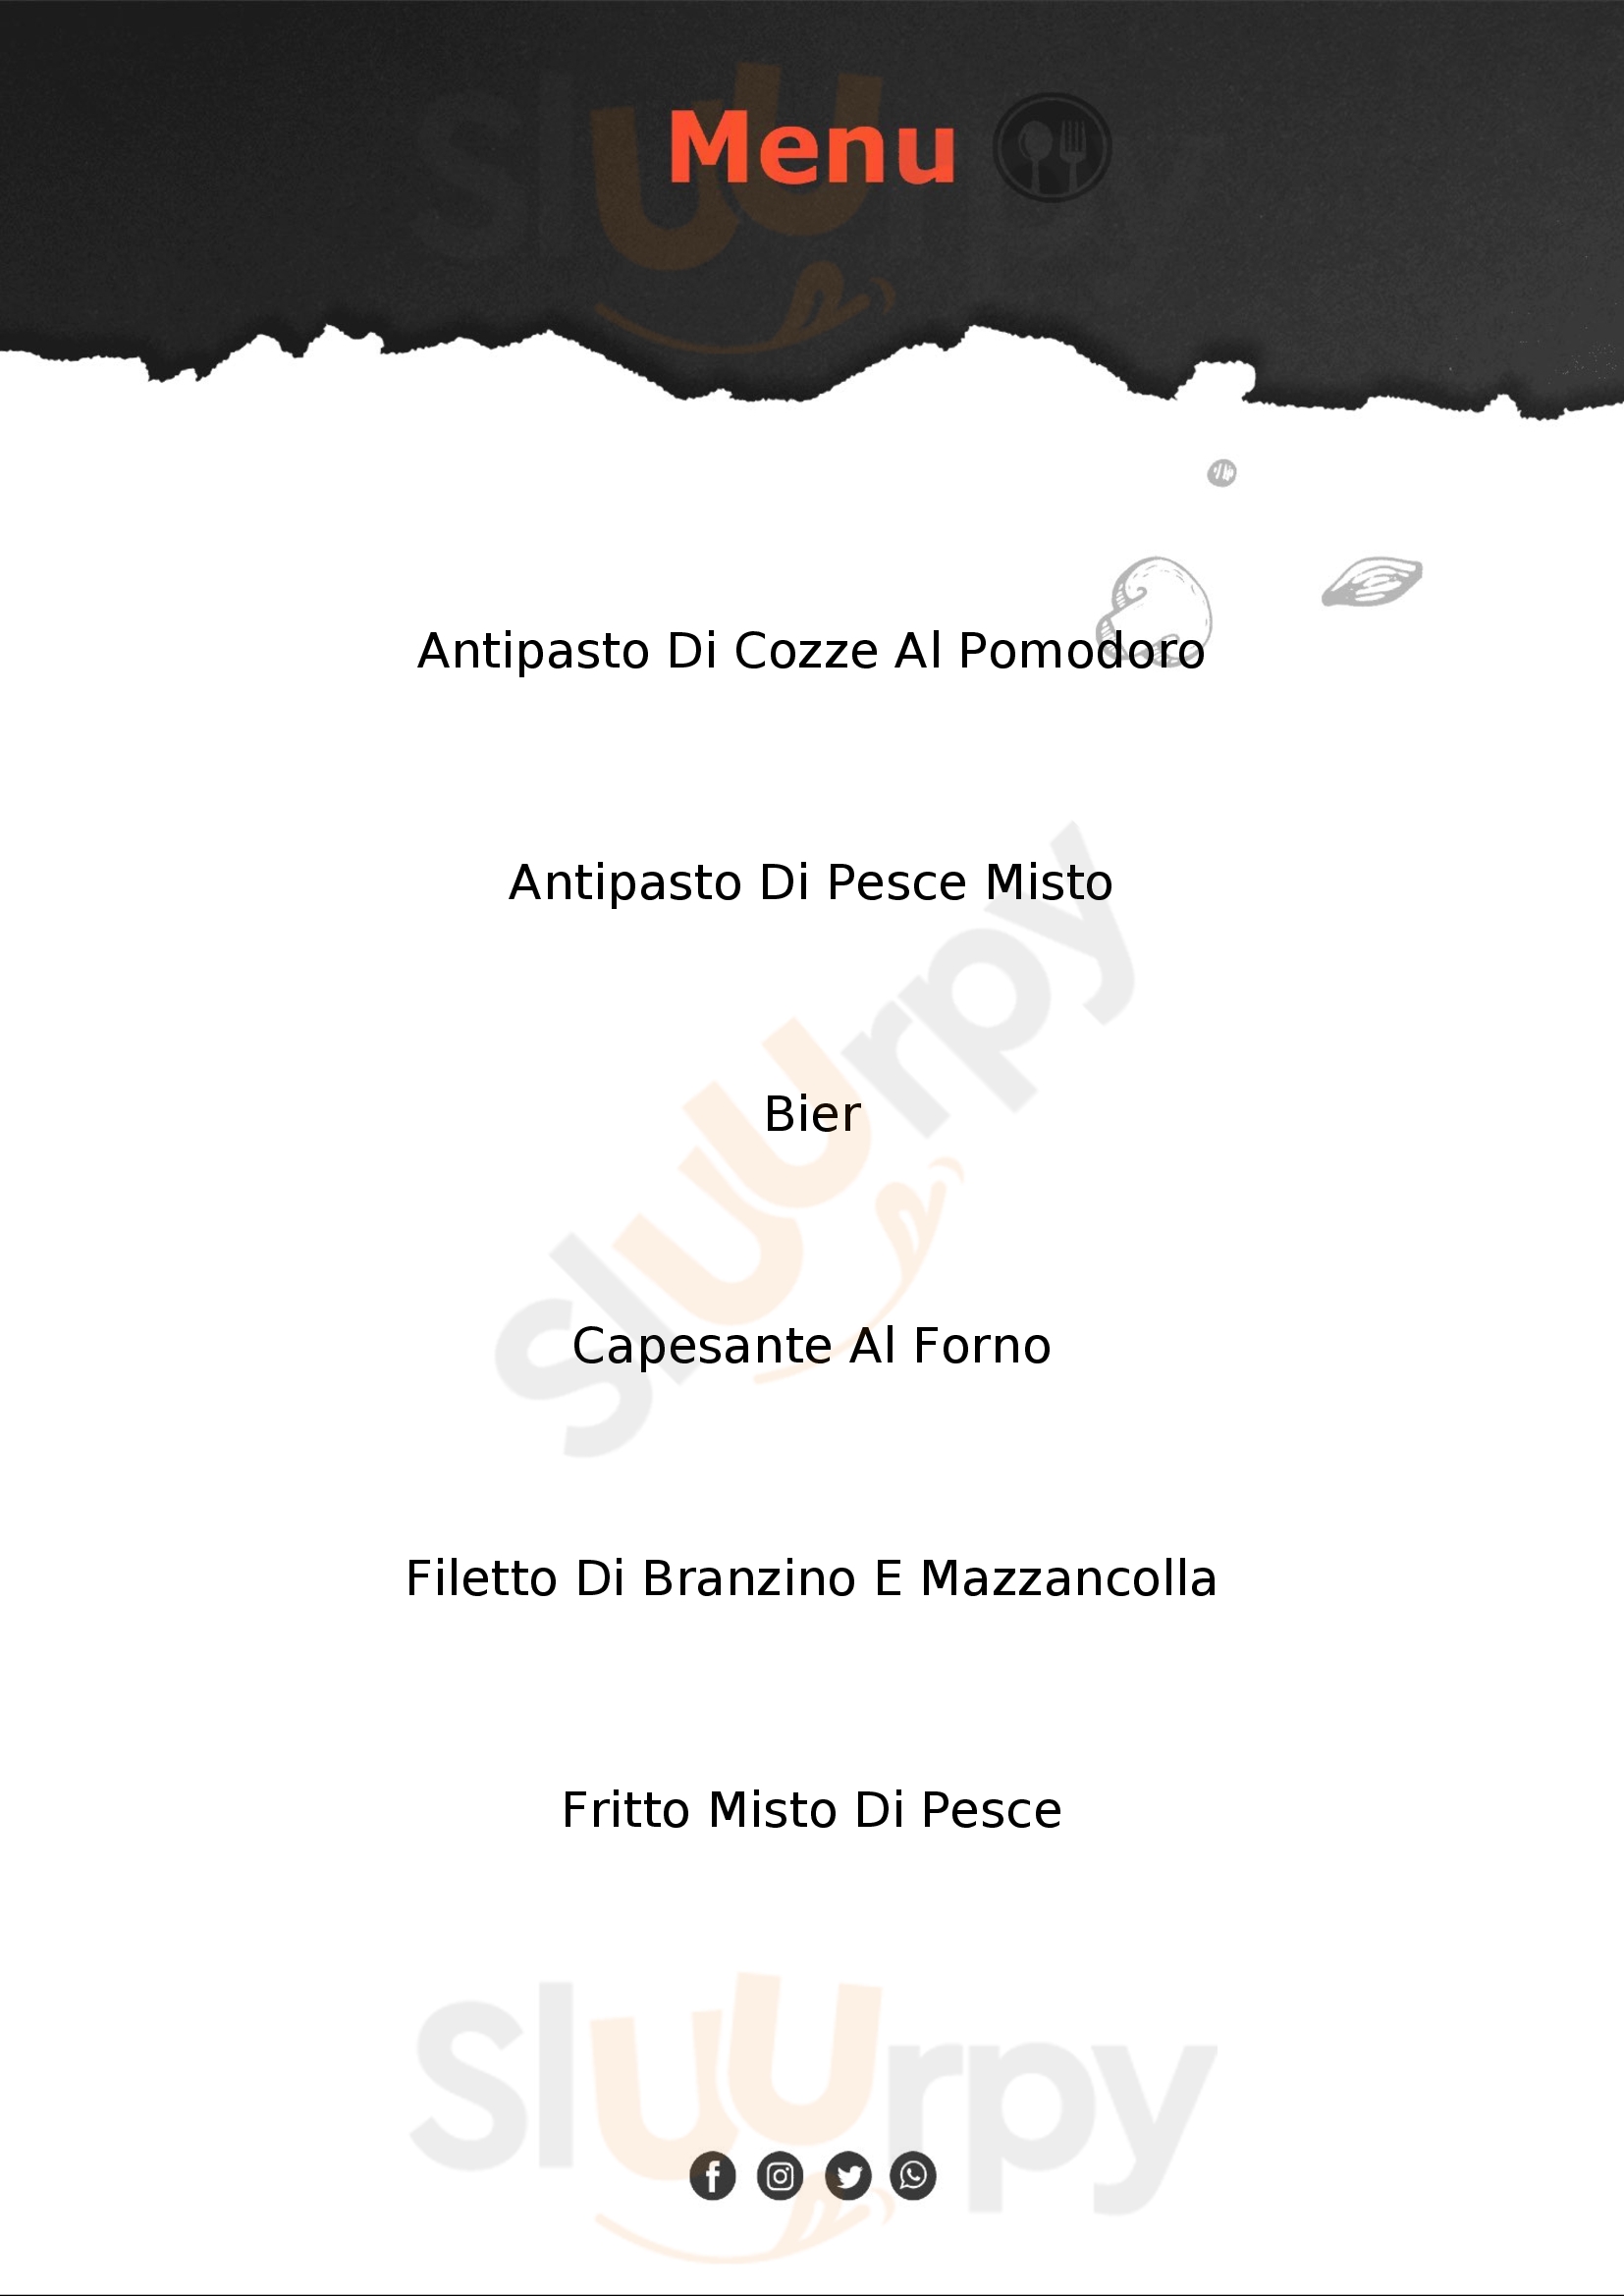 Trattoria Pizzeria Da Gino Cavallino-Treporti menù 1 pagina